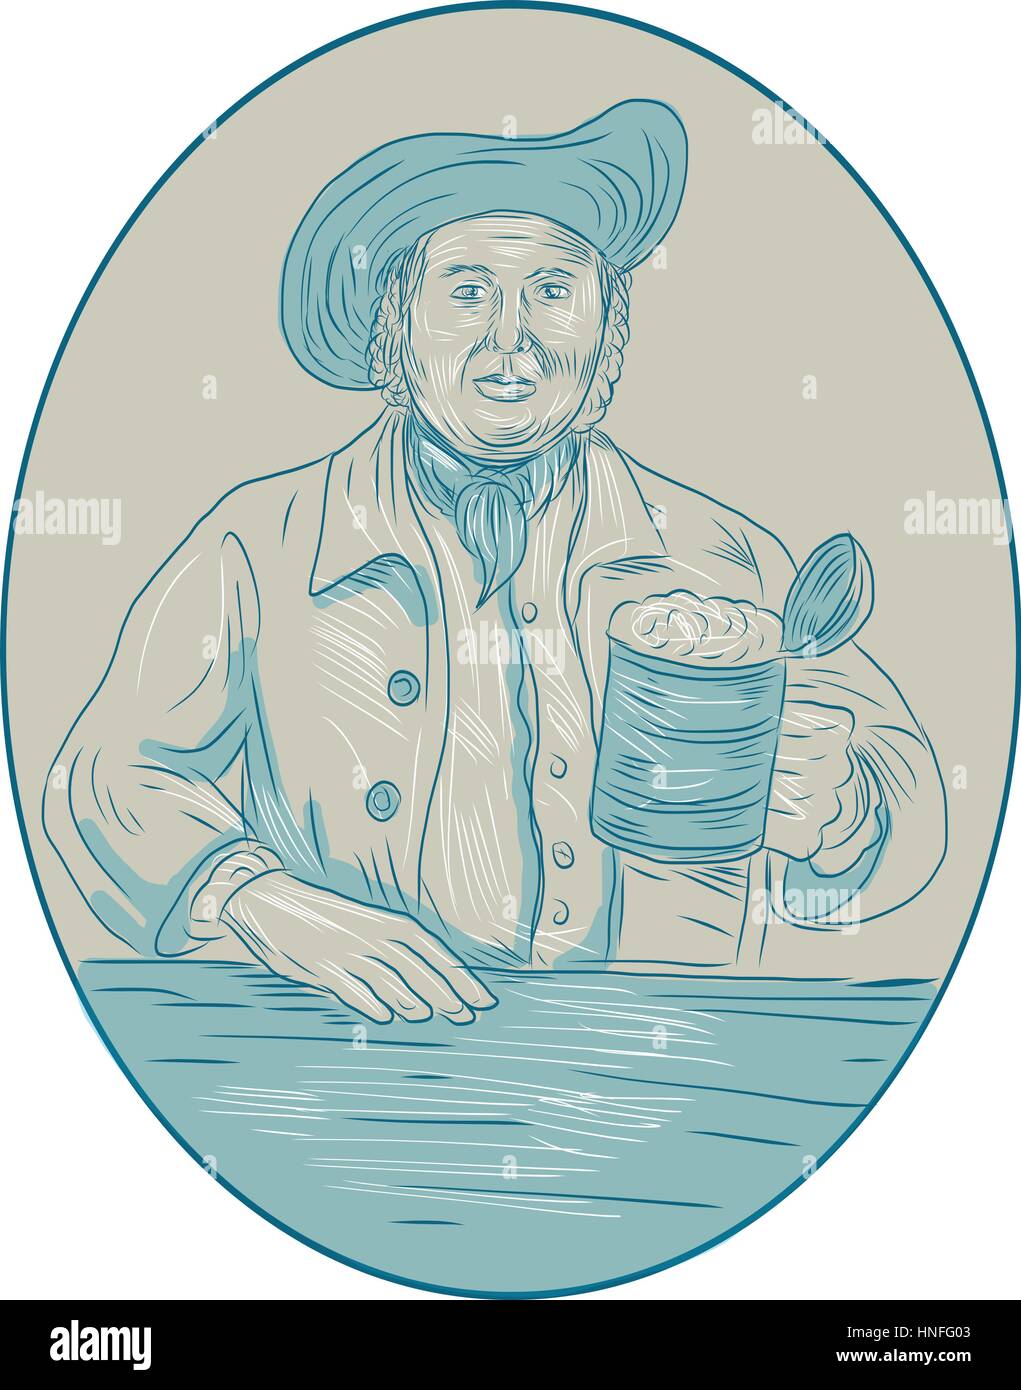 Zeichnung Skizze Stil Darstellung eines mittelalterlichen Gentleman Biertrinker halten Tankard im inneren ovalen Form betrachtet von vorne. Stock Vektor